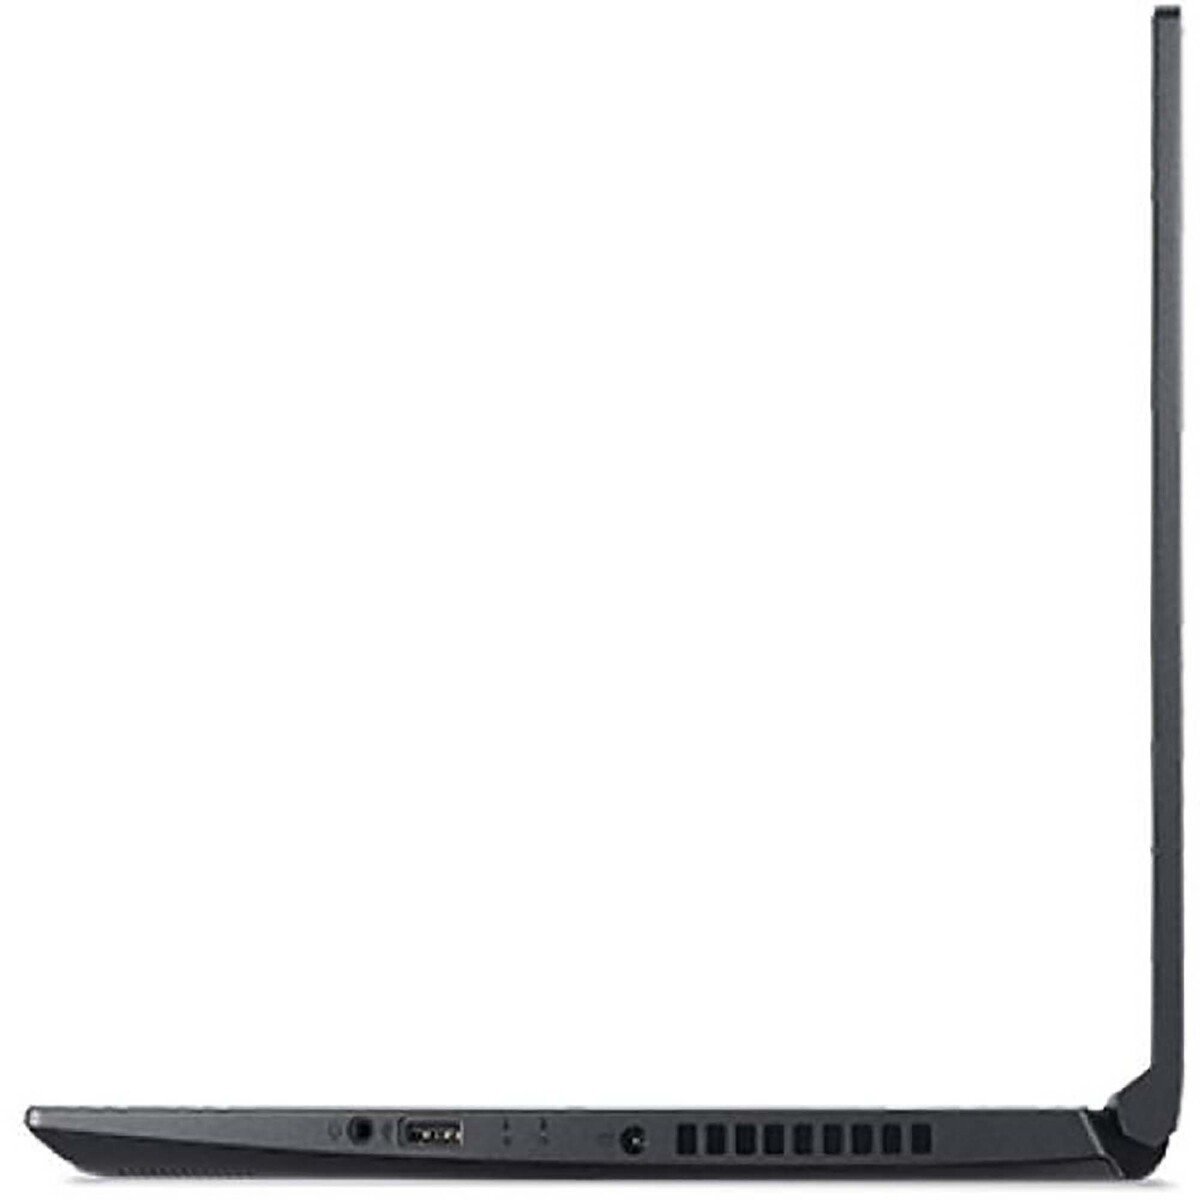 Acer A715-42G-R1DU NH.QE5EM.001 Gaming Laptop,Ryzen 7 1.8GHz, 16GB RAM, 512GB SSD, 4GB ,Nvidia GeForce RTX 3050,Windows 11, 15.6inch FHD,Black,English-Arabic Keyboard